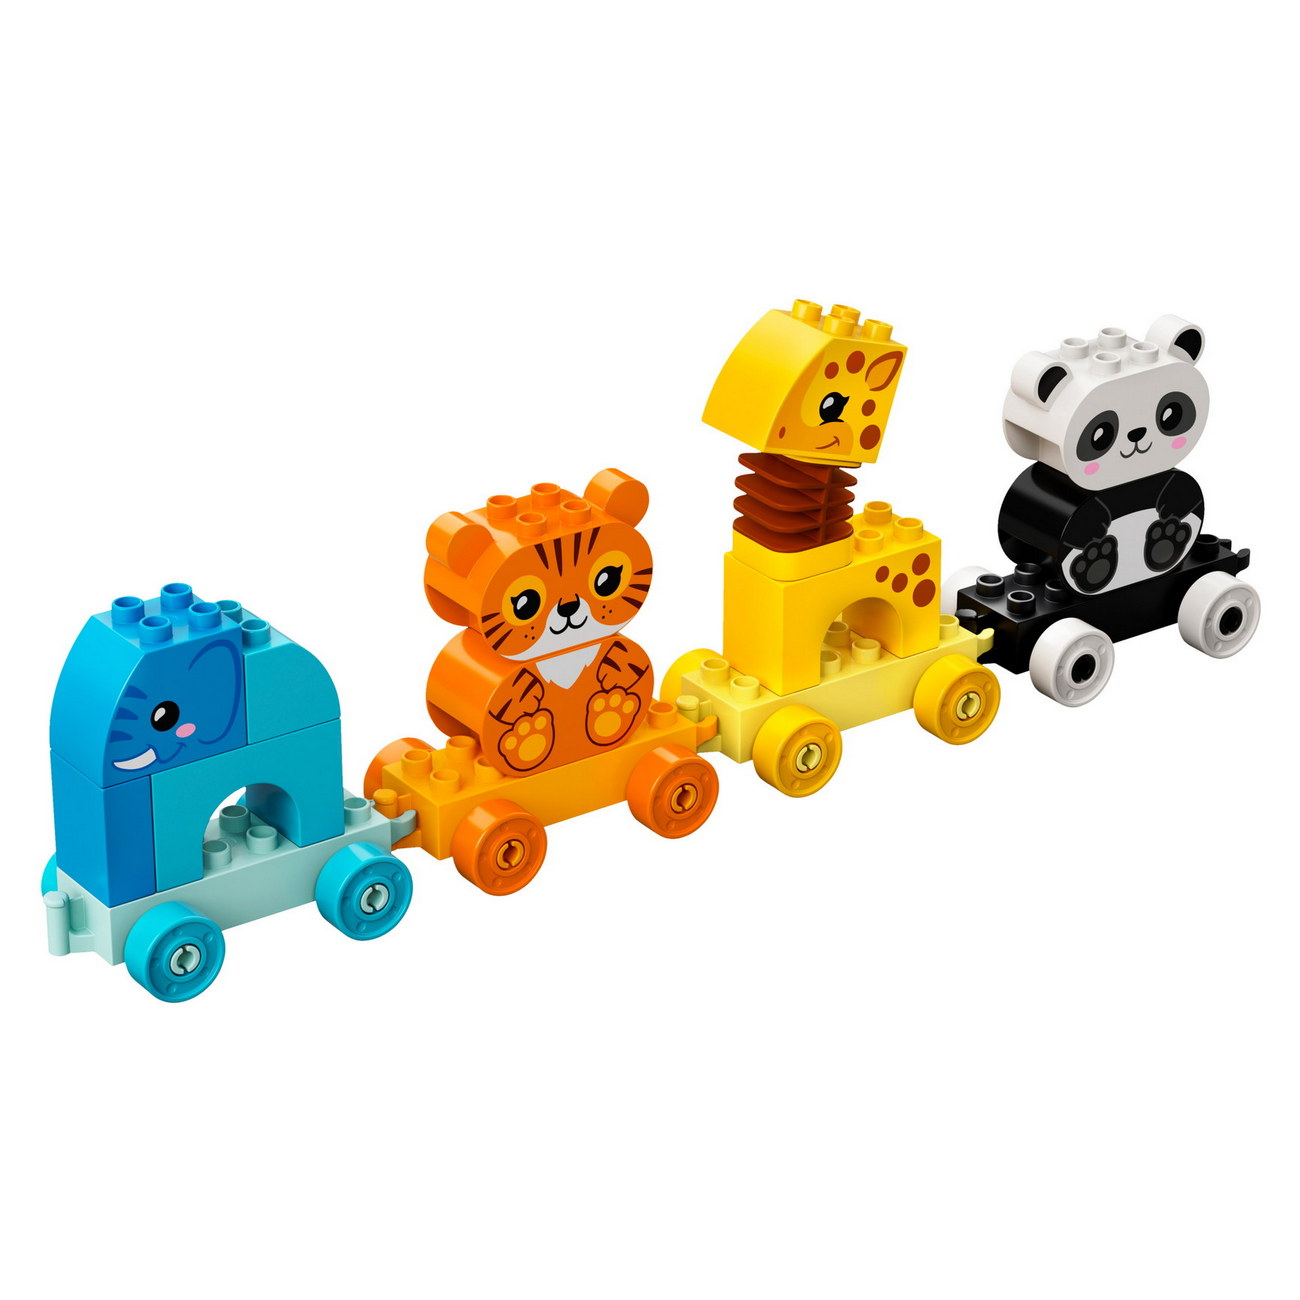 LEGO DUPLO 10955 - Mein erster Tierzug